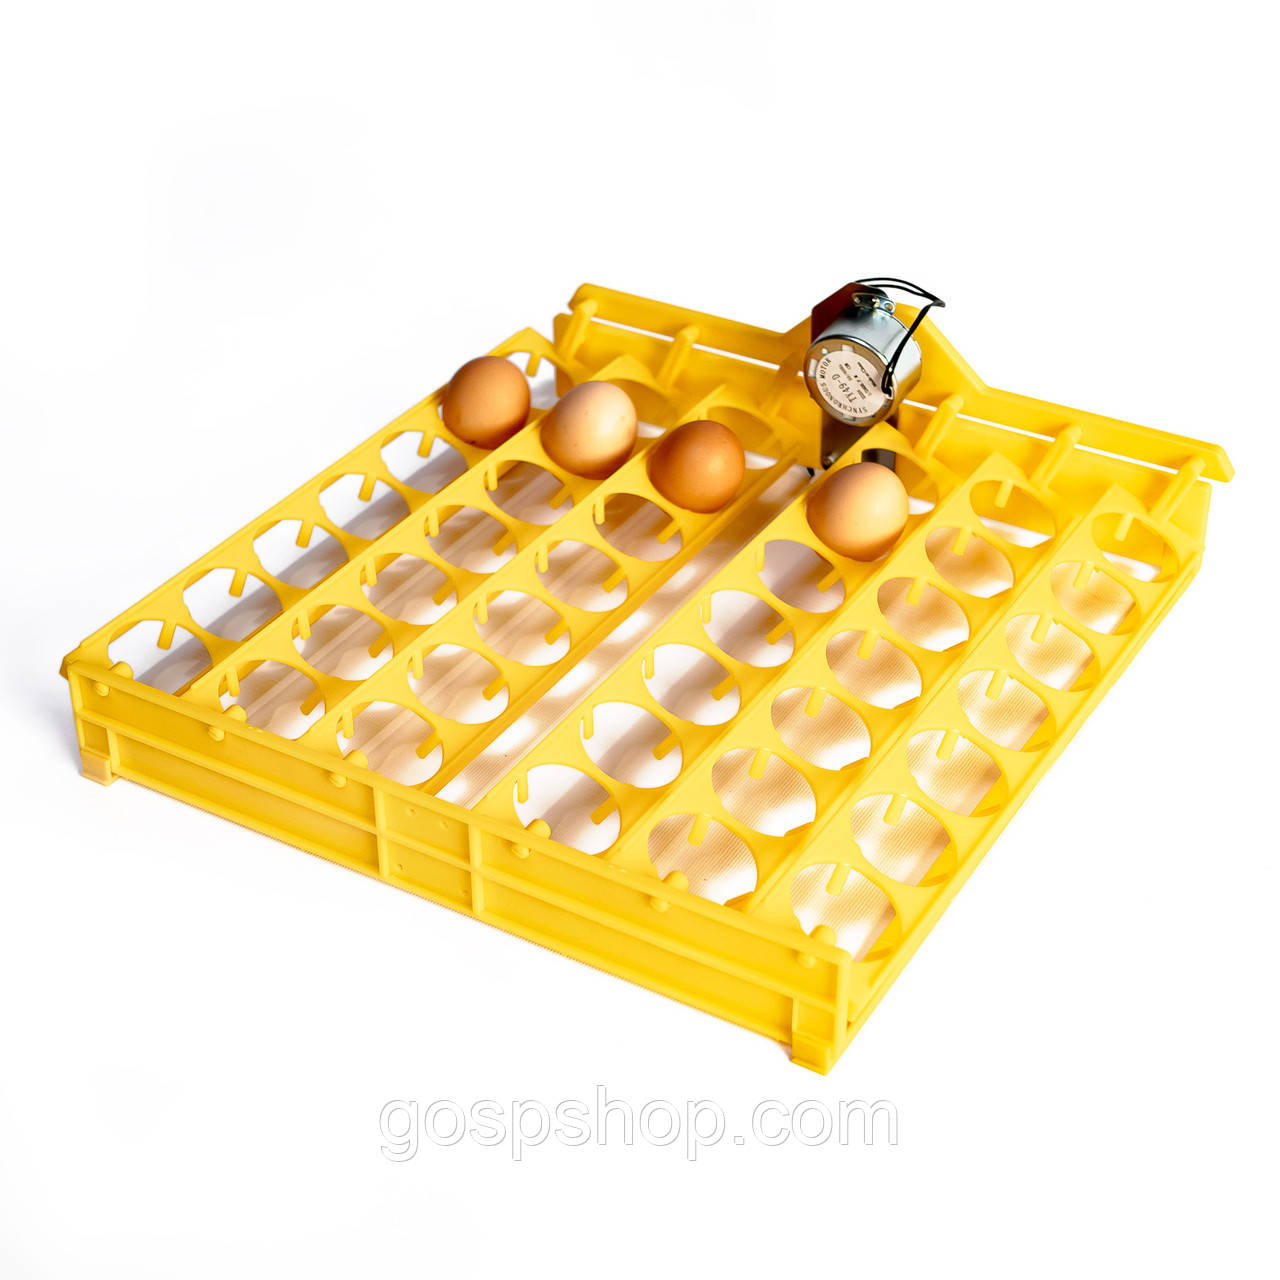 Механизм автоматического переворота яиц на 42 яйца